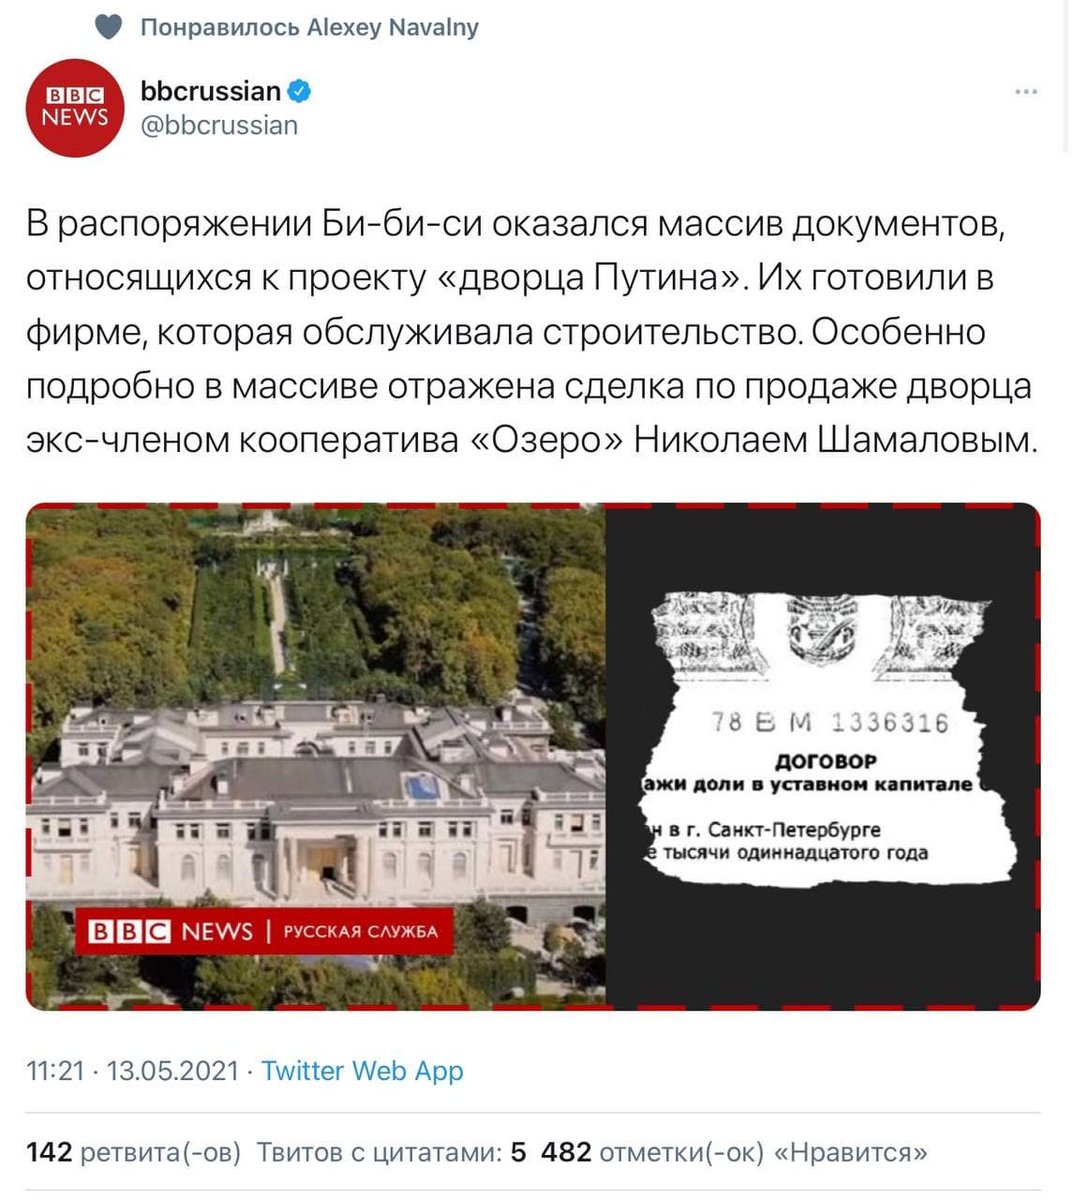 Новости ббс телеграмм. Дворец Путина.